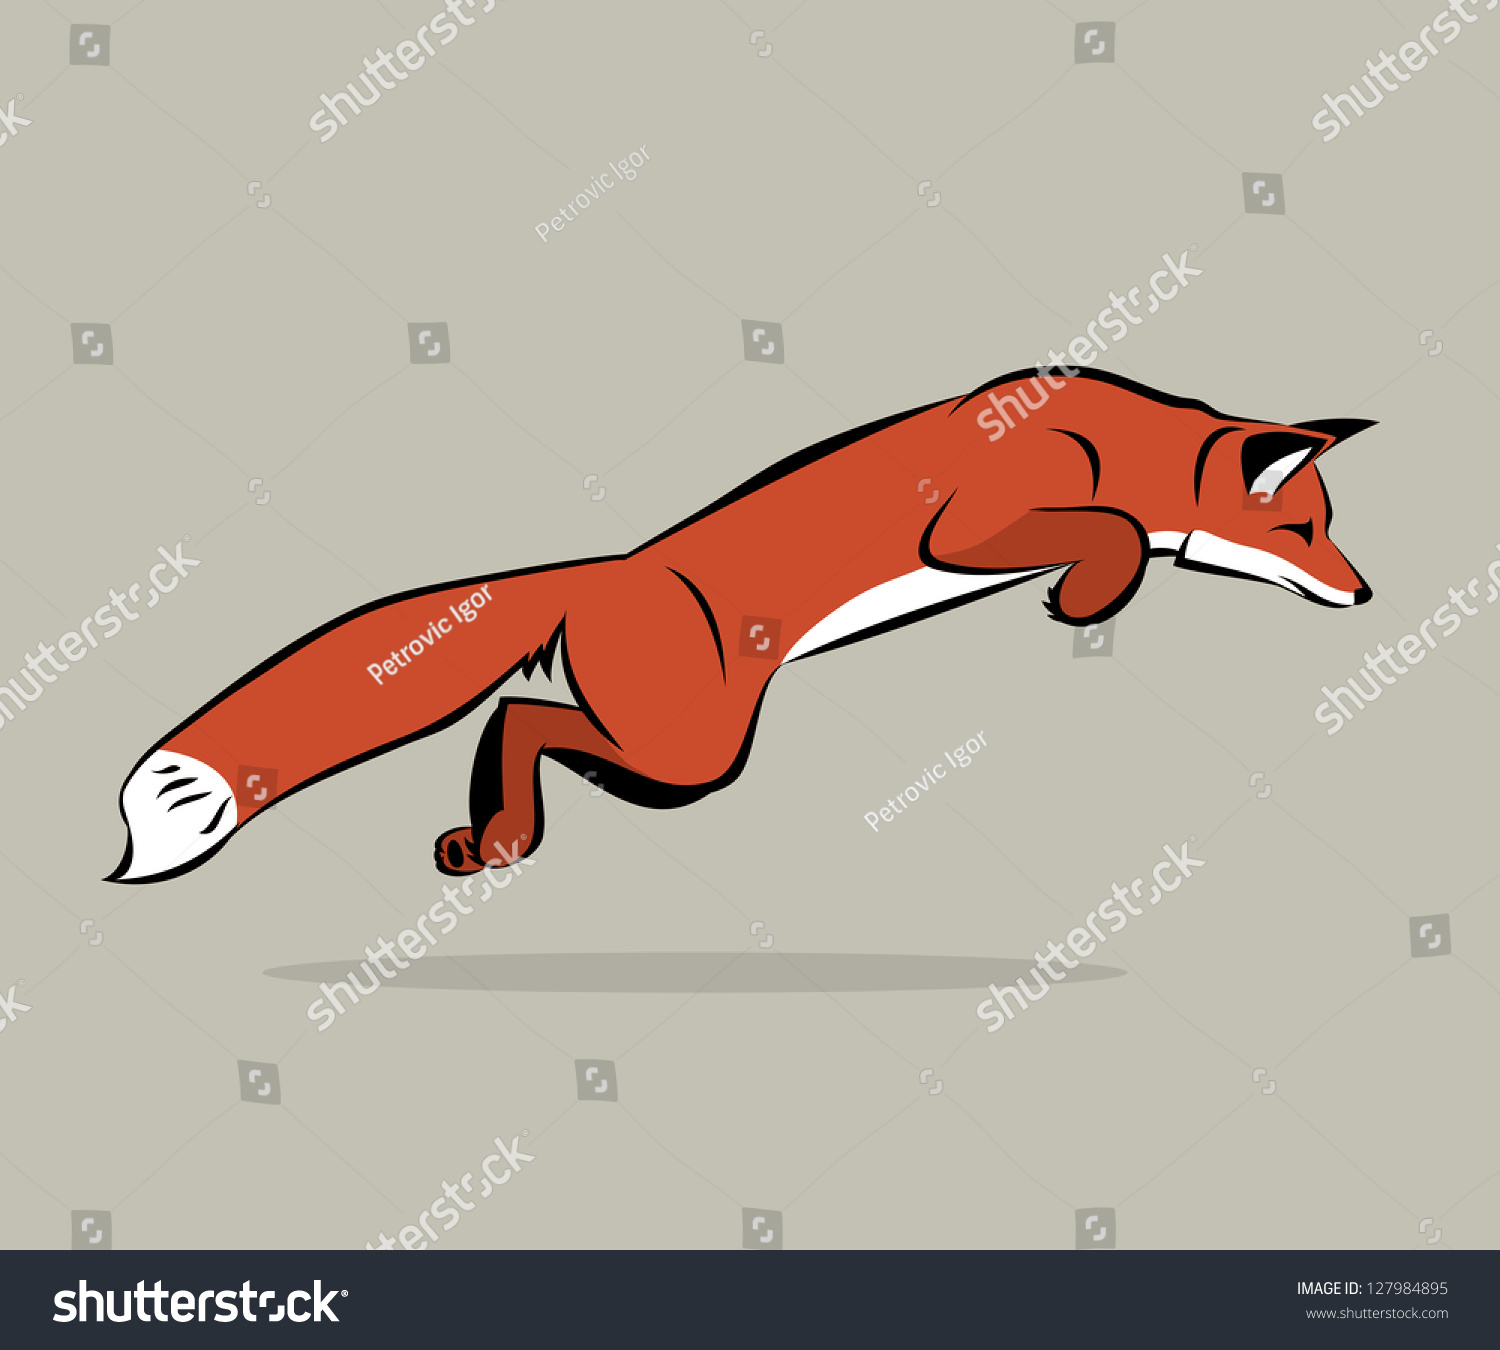 Jumping Fox - Vector Illustration - 127984895 : Shutterstock